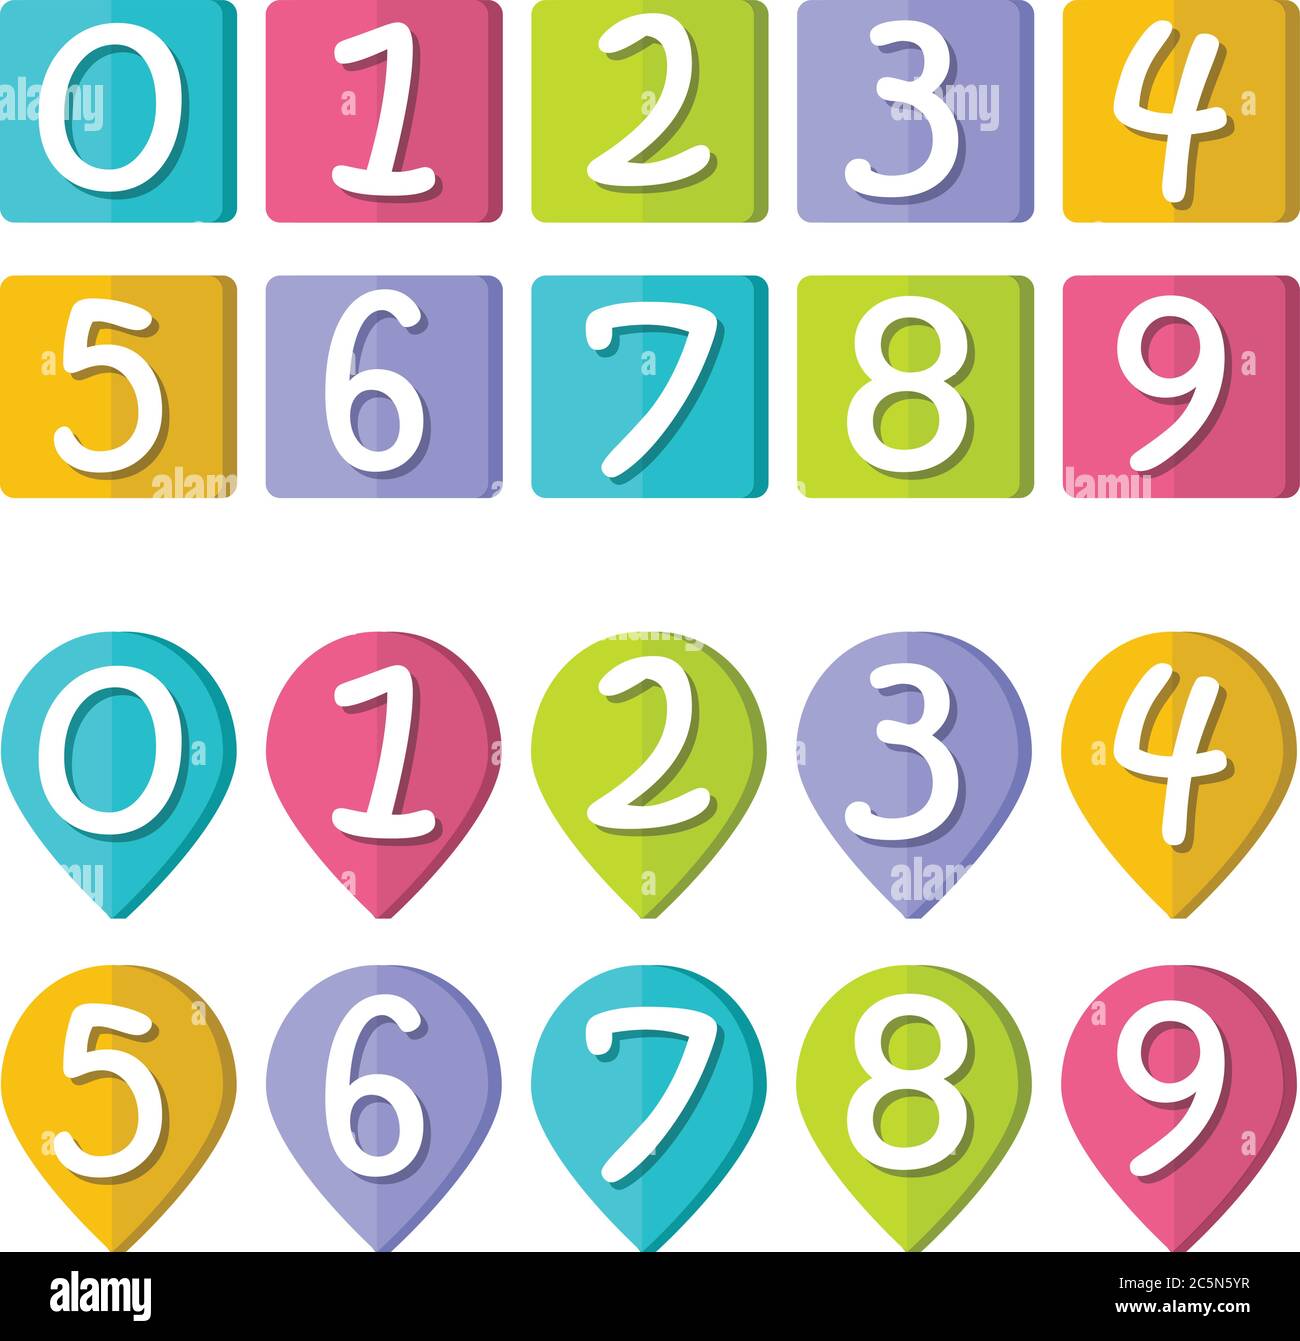 Chiffres amusants, collection de chiffres de 0 à 9, arrière-plans colorés. Modèle pour jeux ou livres pour enfants, illustration vectorielle Illustration de Vecteur